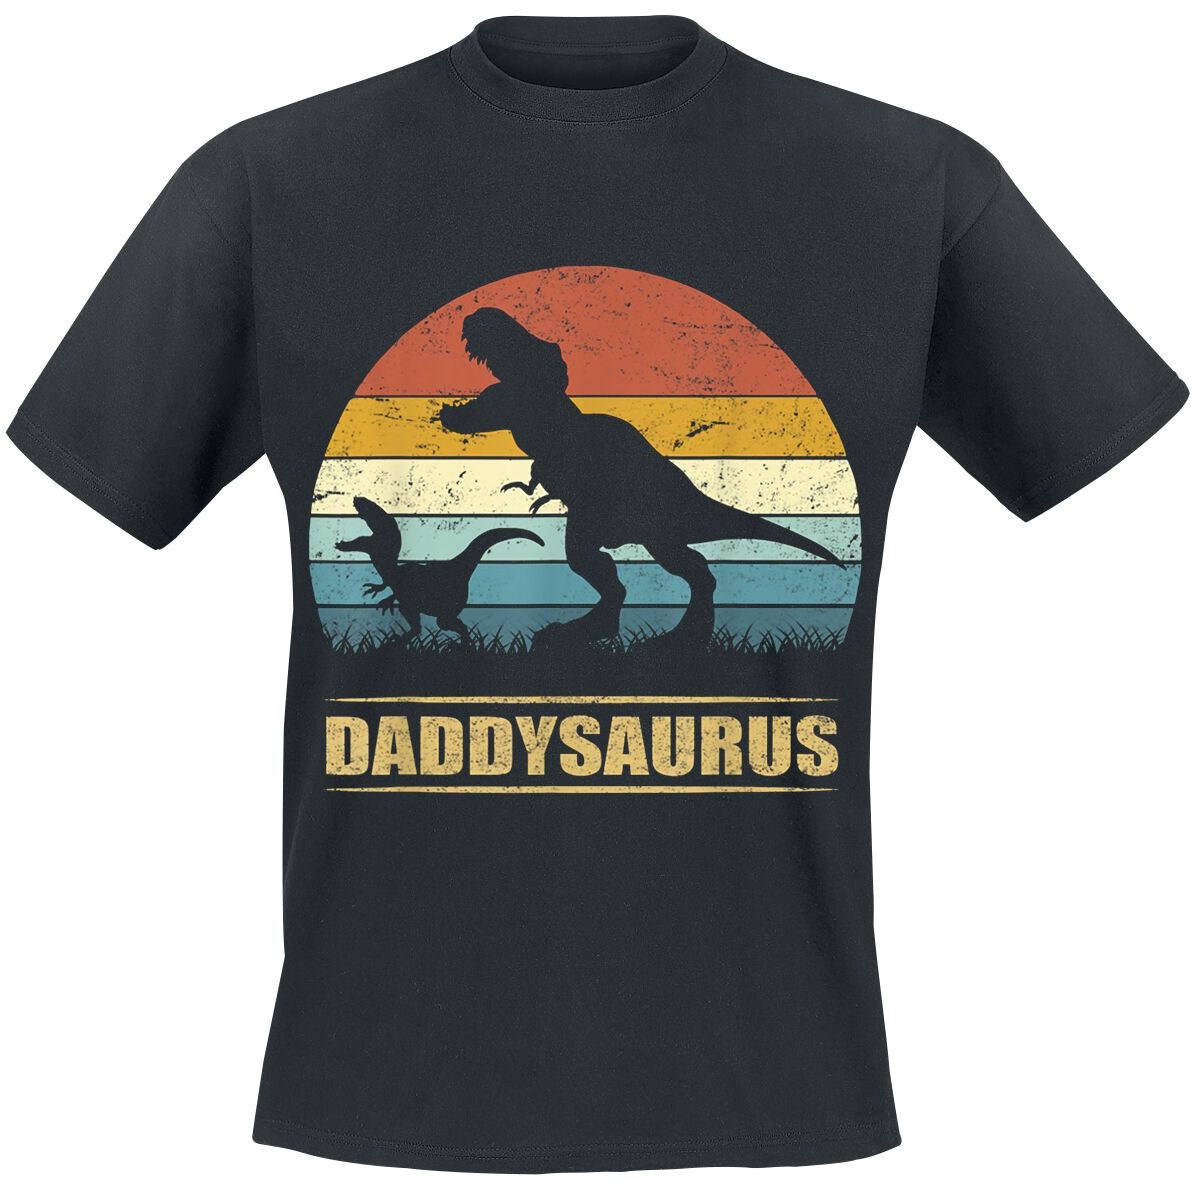 Familie & Freunde Daddysaurus 3 T-Shirt schwarz in M